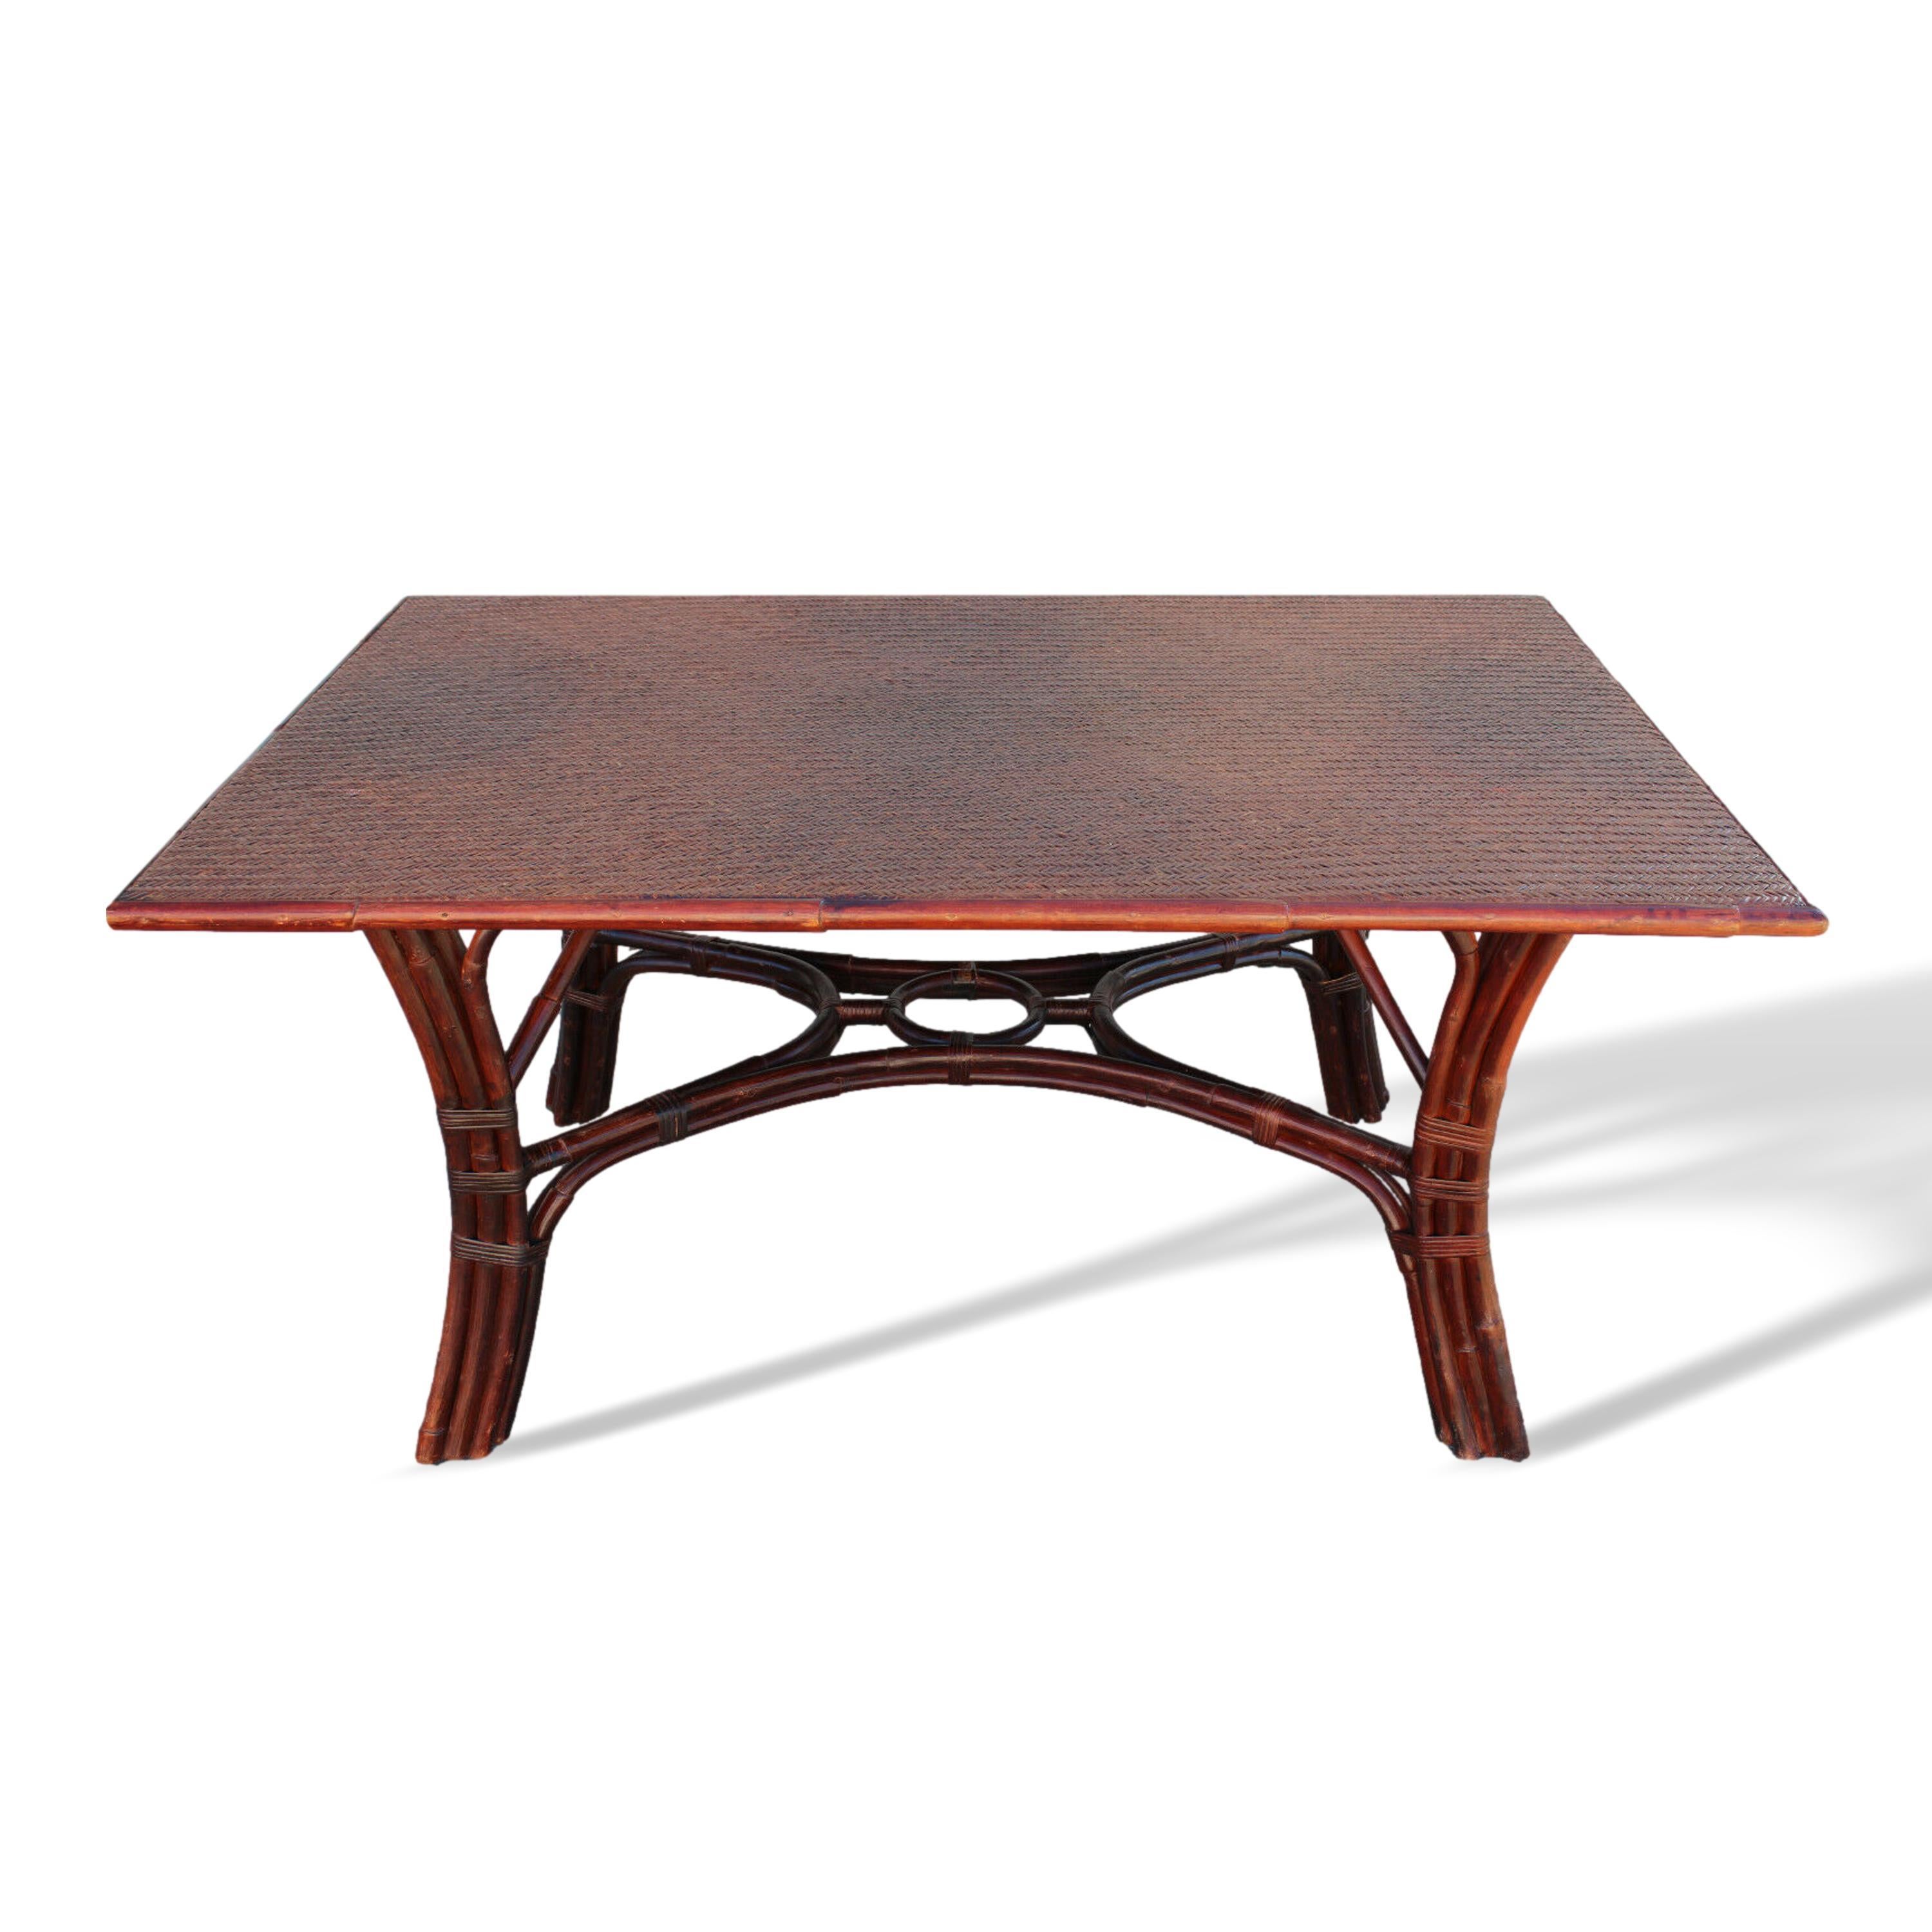 Une exceptionnelle table de salle à manger vintage en rotin de Ralph Lauren Collectional. La table rectangulaire a un plateau en rotin tressé et conserve sa riche finition d'origine en acajou.